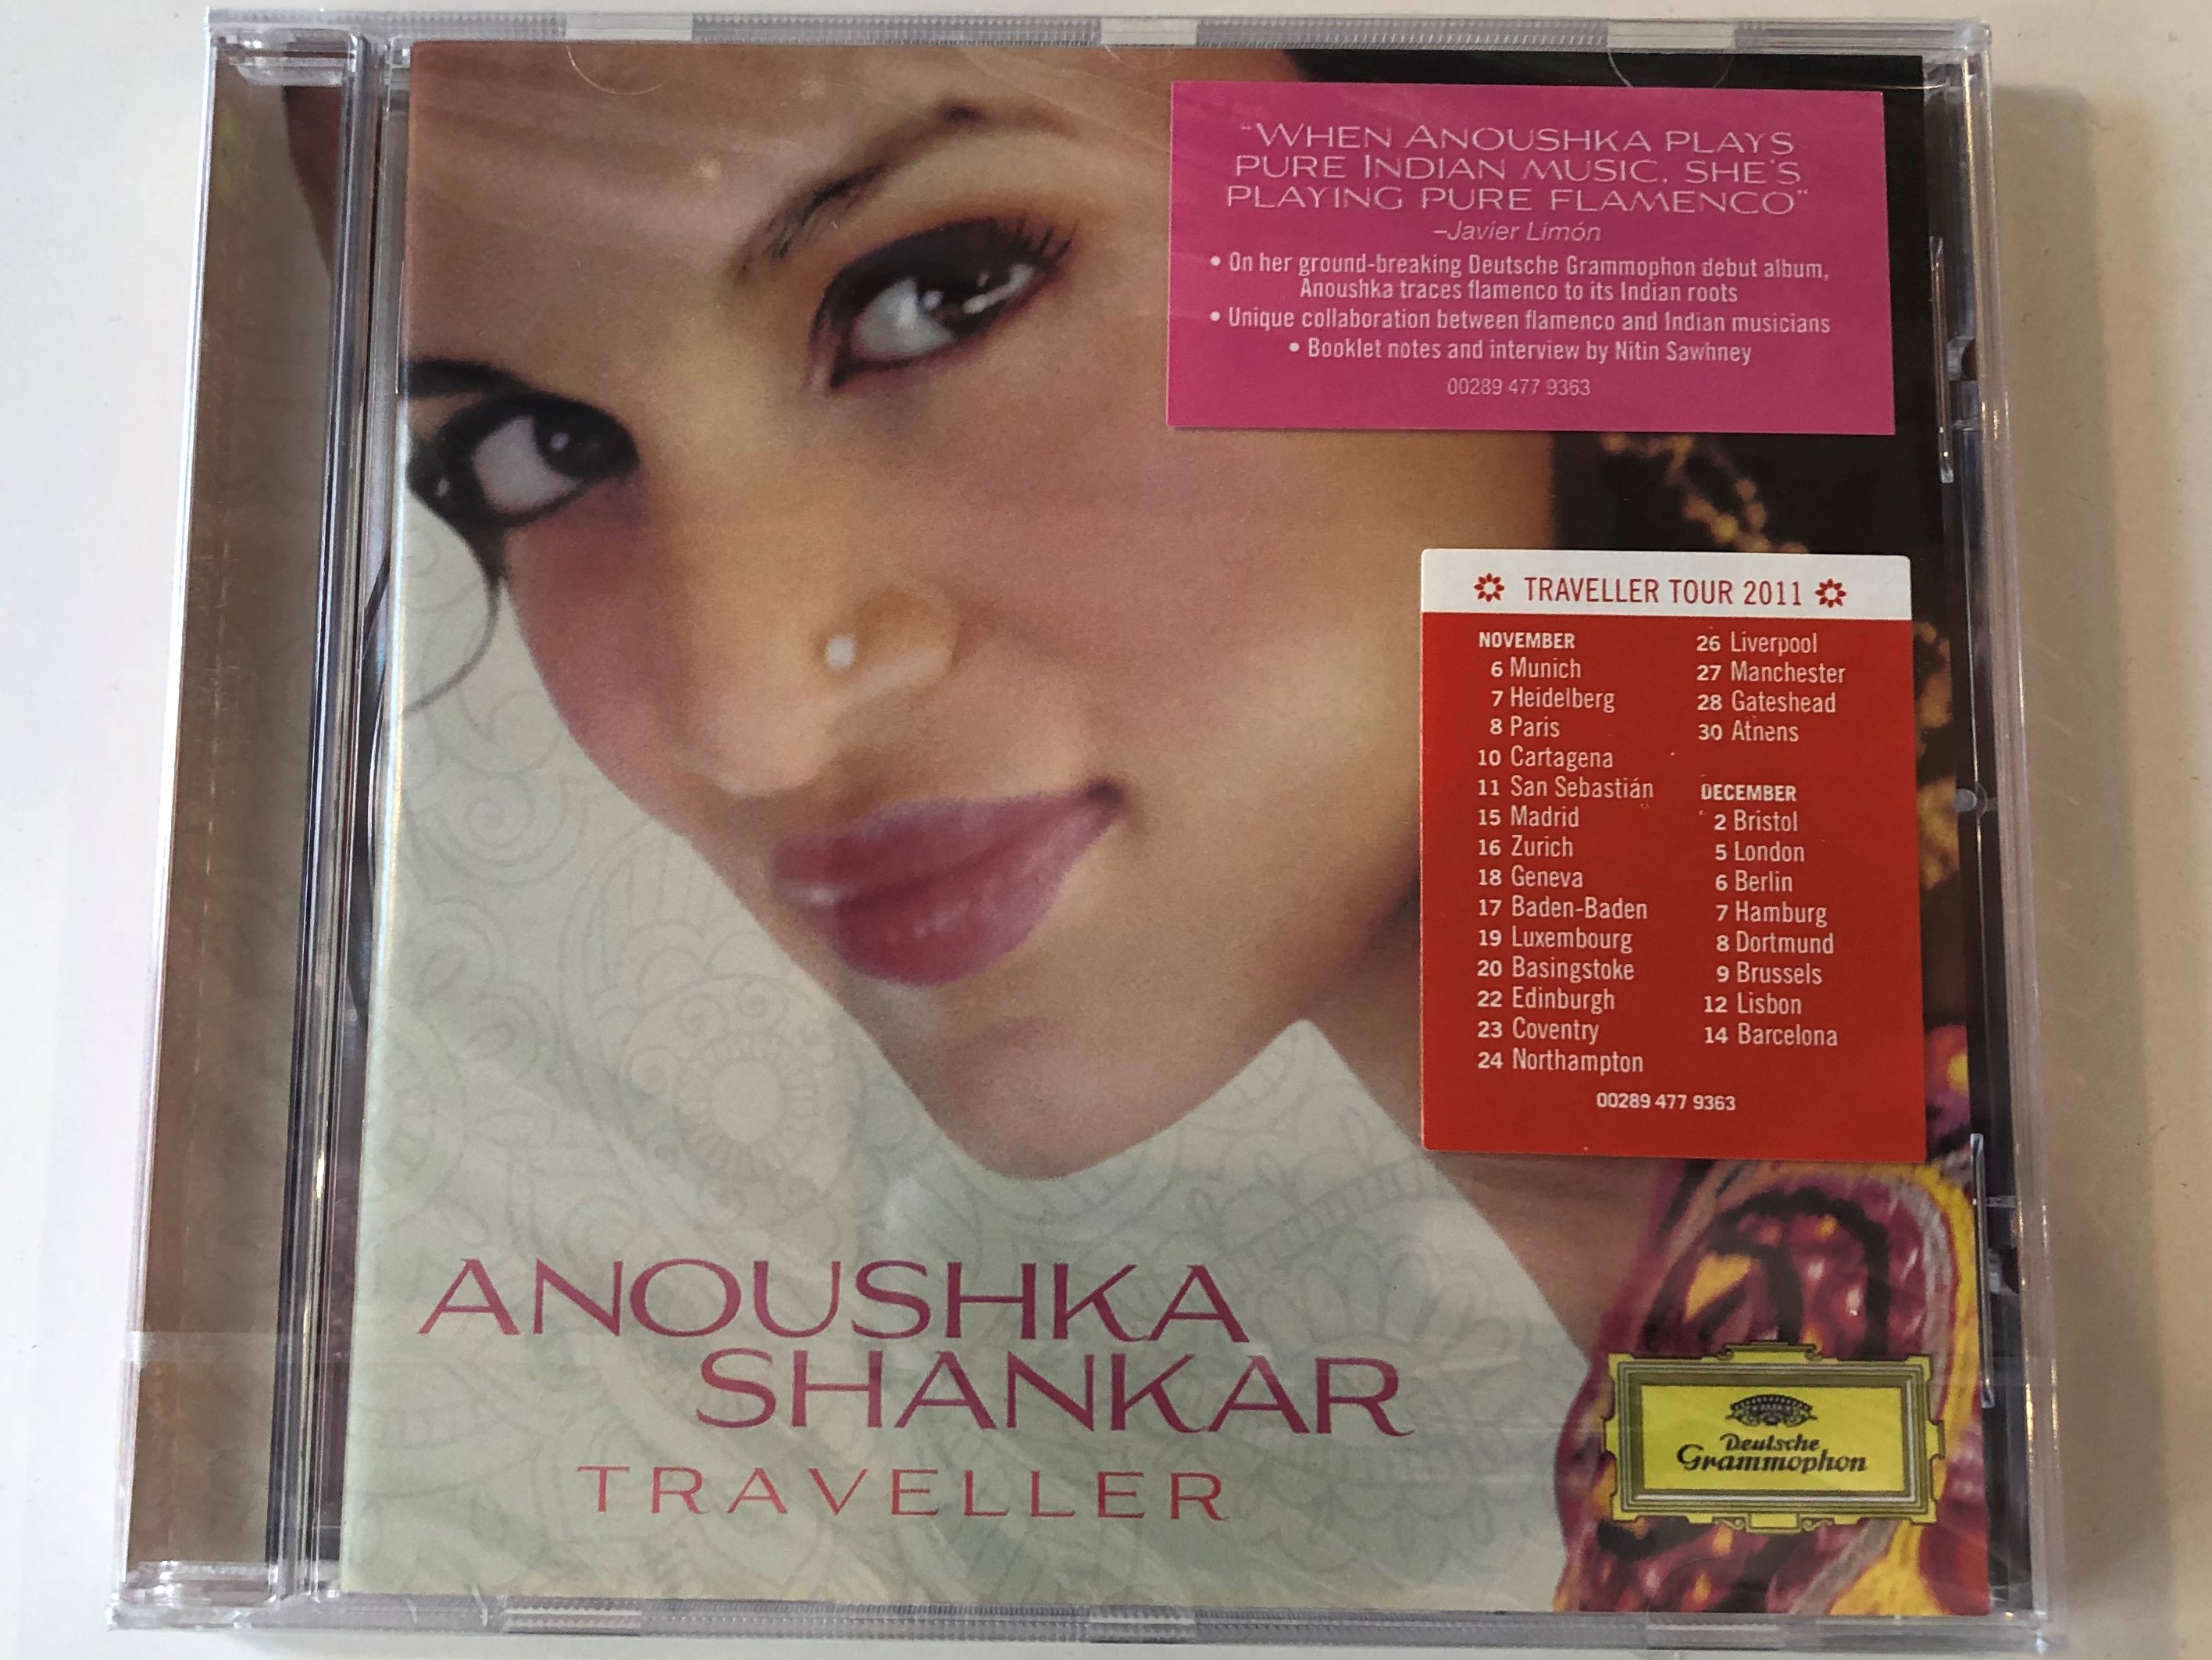 anoushka-shankar-traveller-deutsche-grammophon-audio-cd-2011-00289-477-9363-1-.jpg